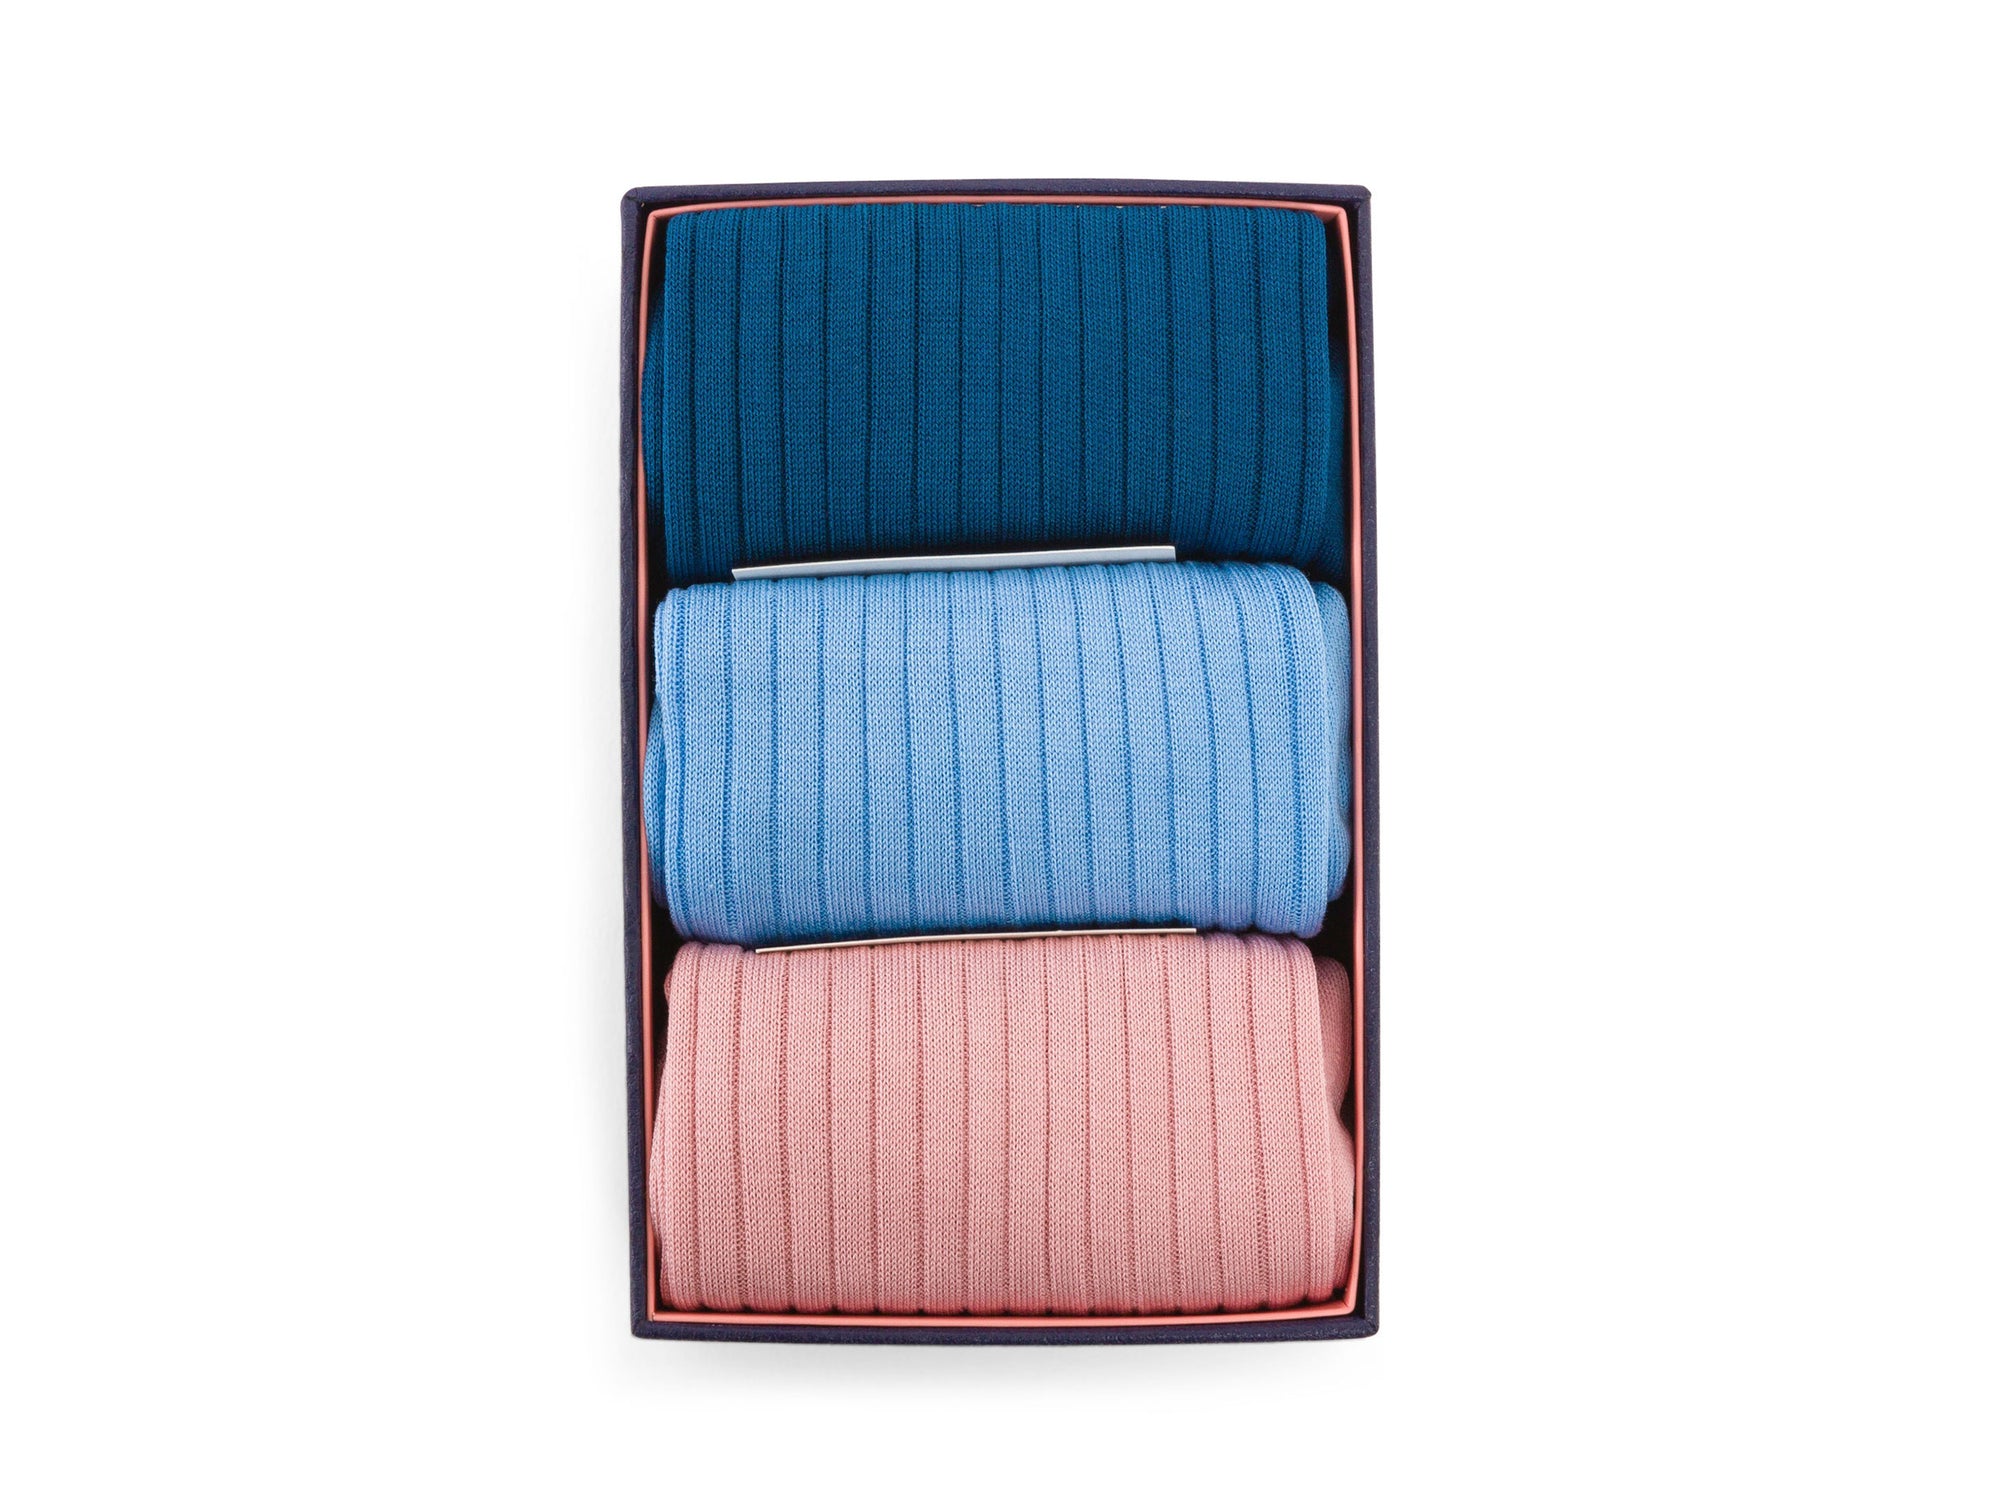 Louis 3 pair Box Set - Pink, Light Blue & Teal